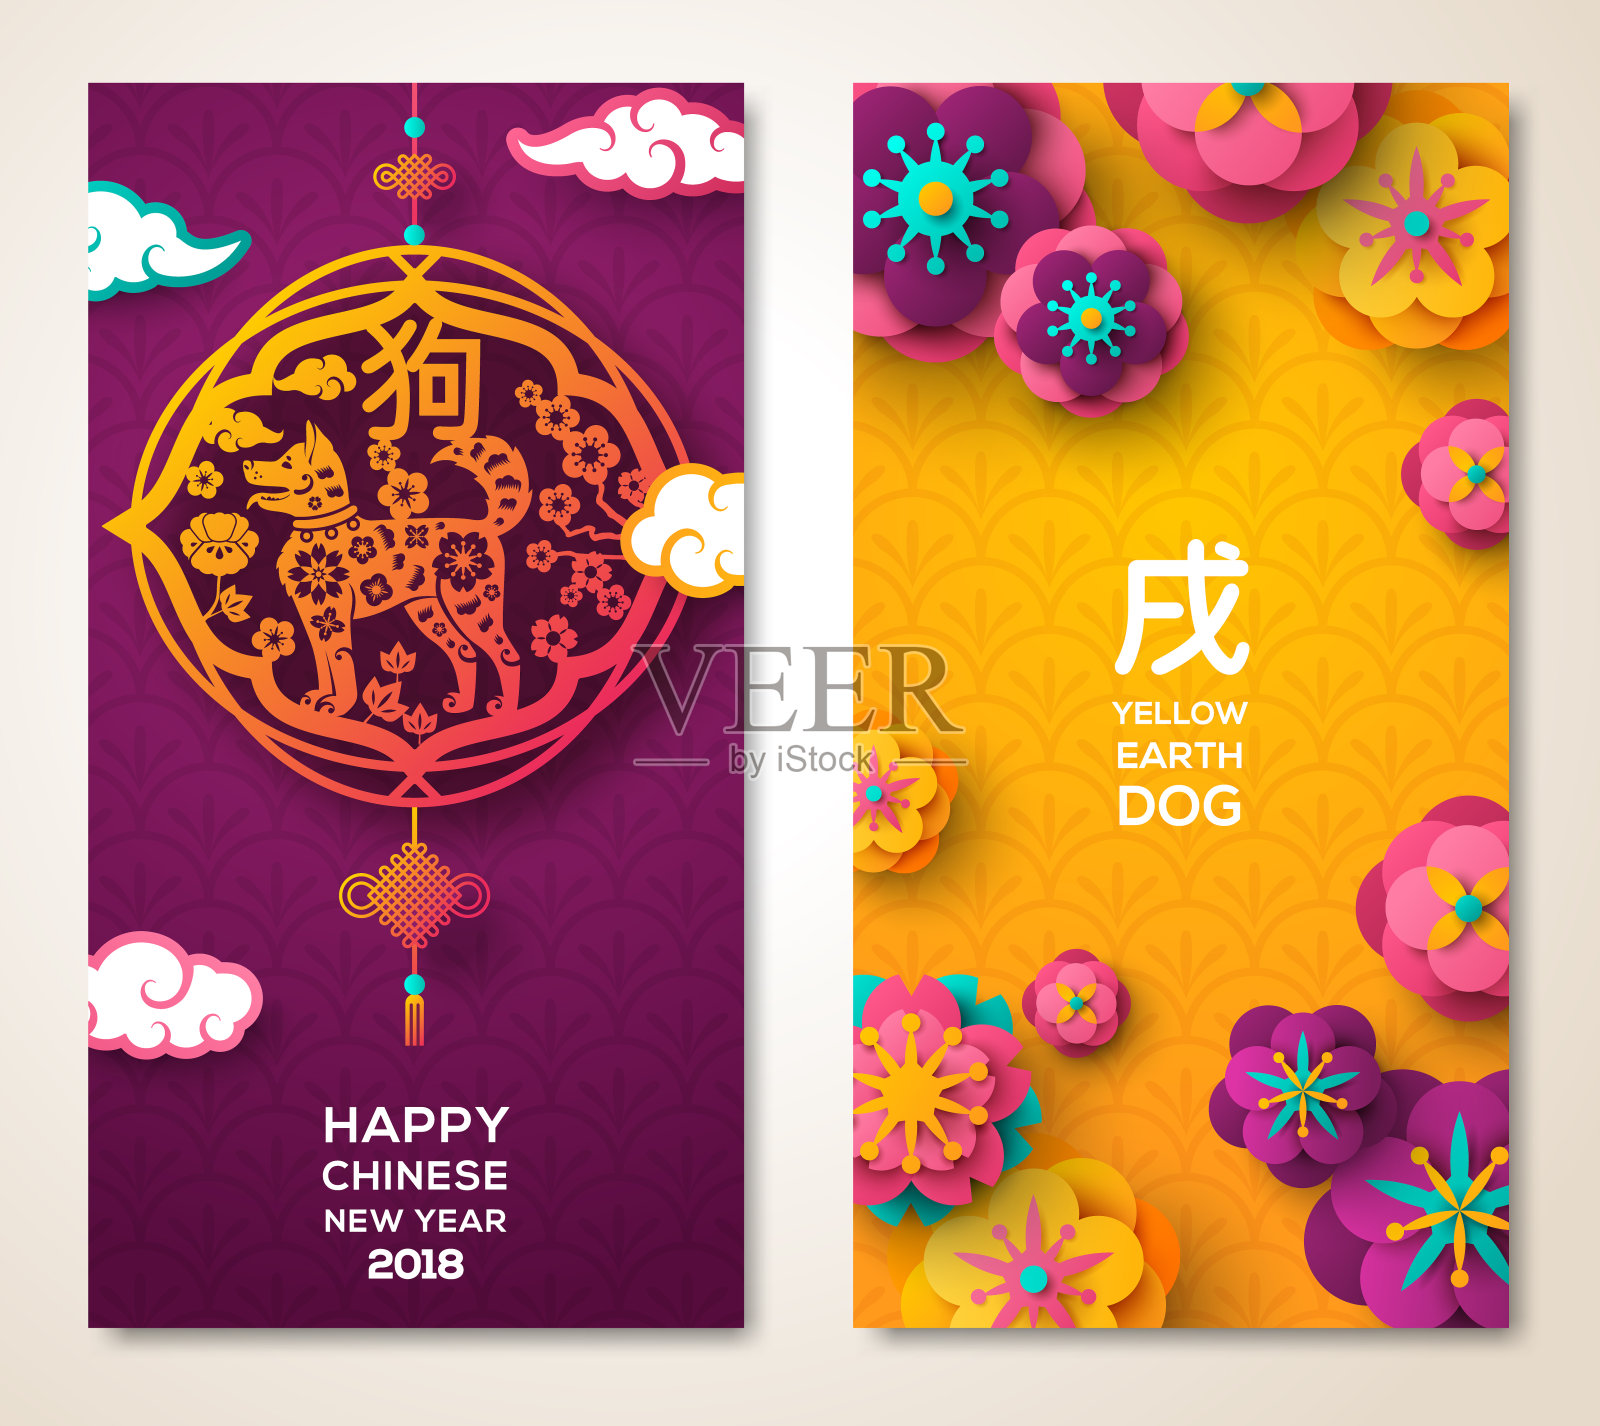 2018中国新年两面海报设计模板素材